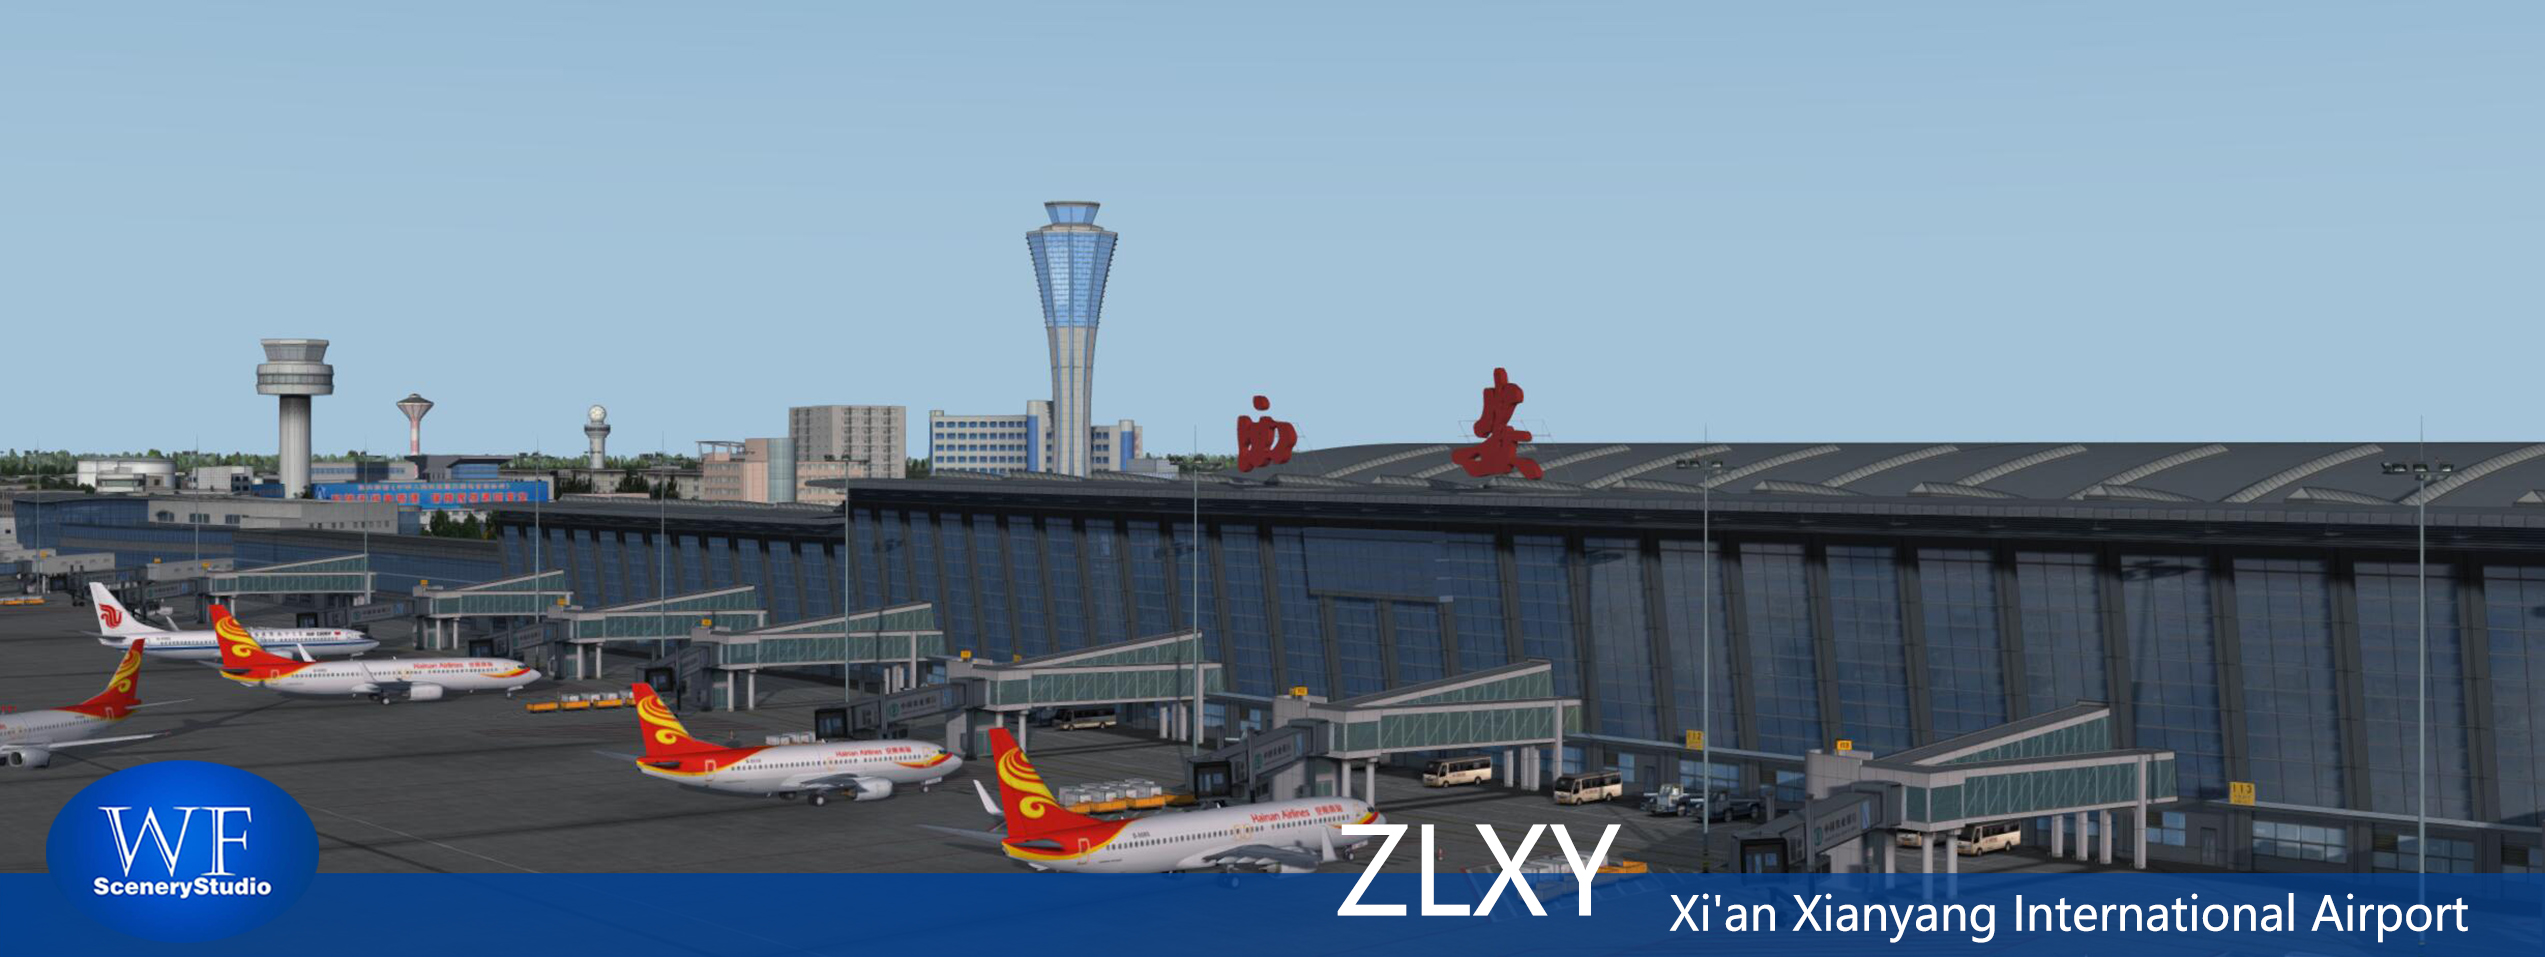 西安咸阳国际机场发布-4027 